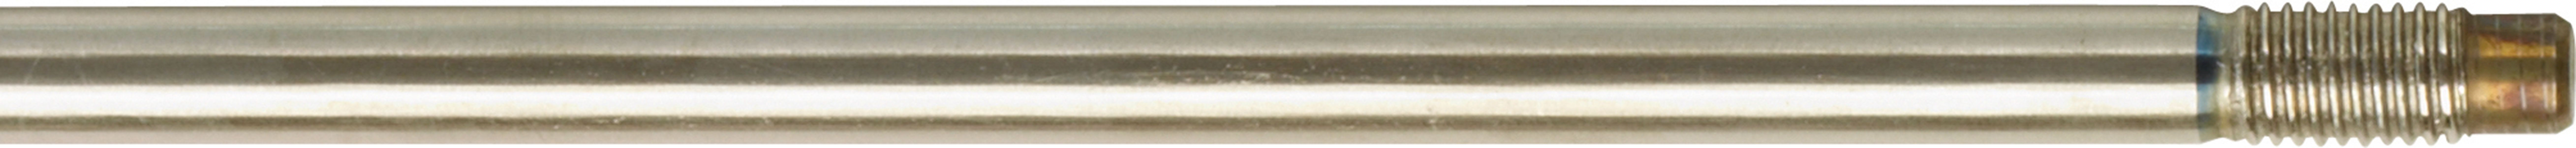 Šíp so závitom pre harpúny s gumou Ø 6.5 mm